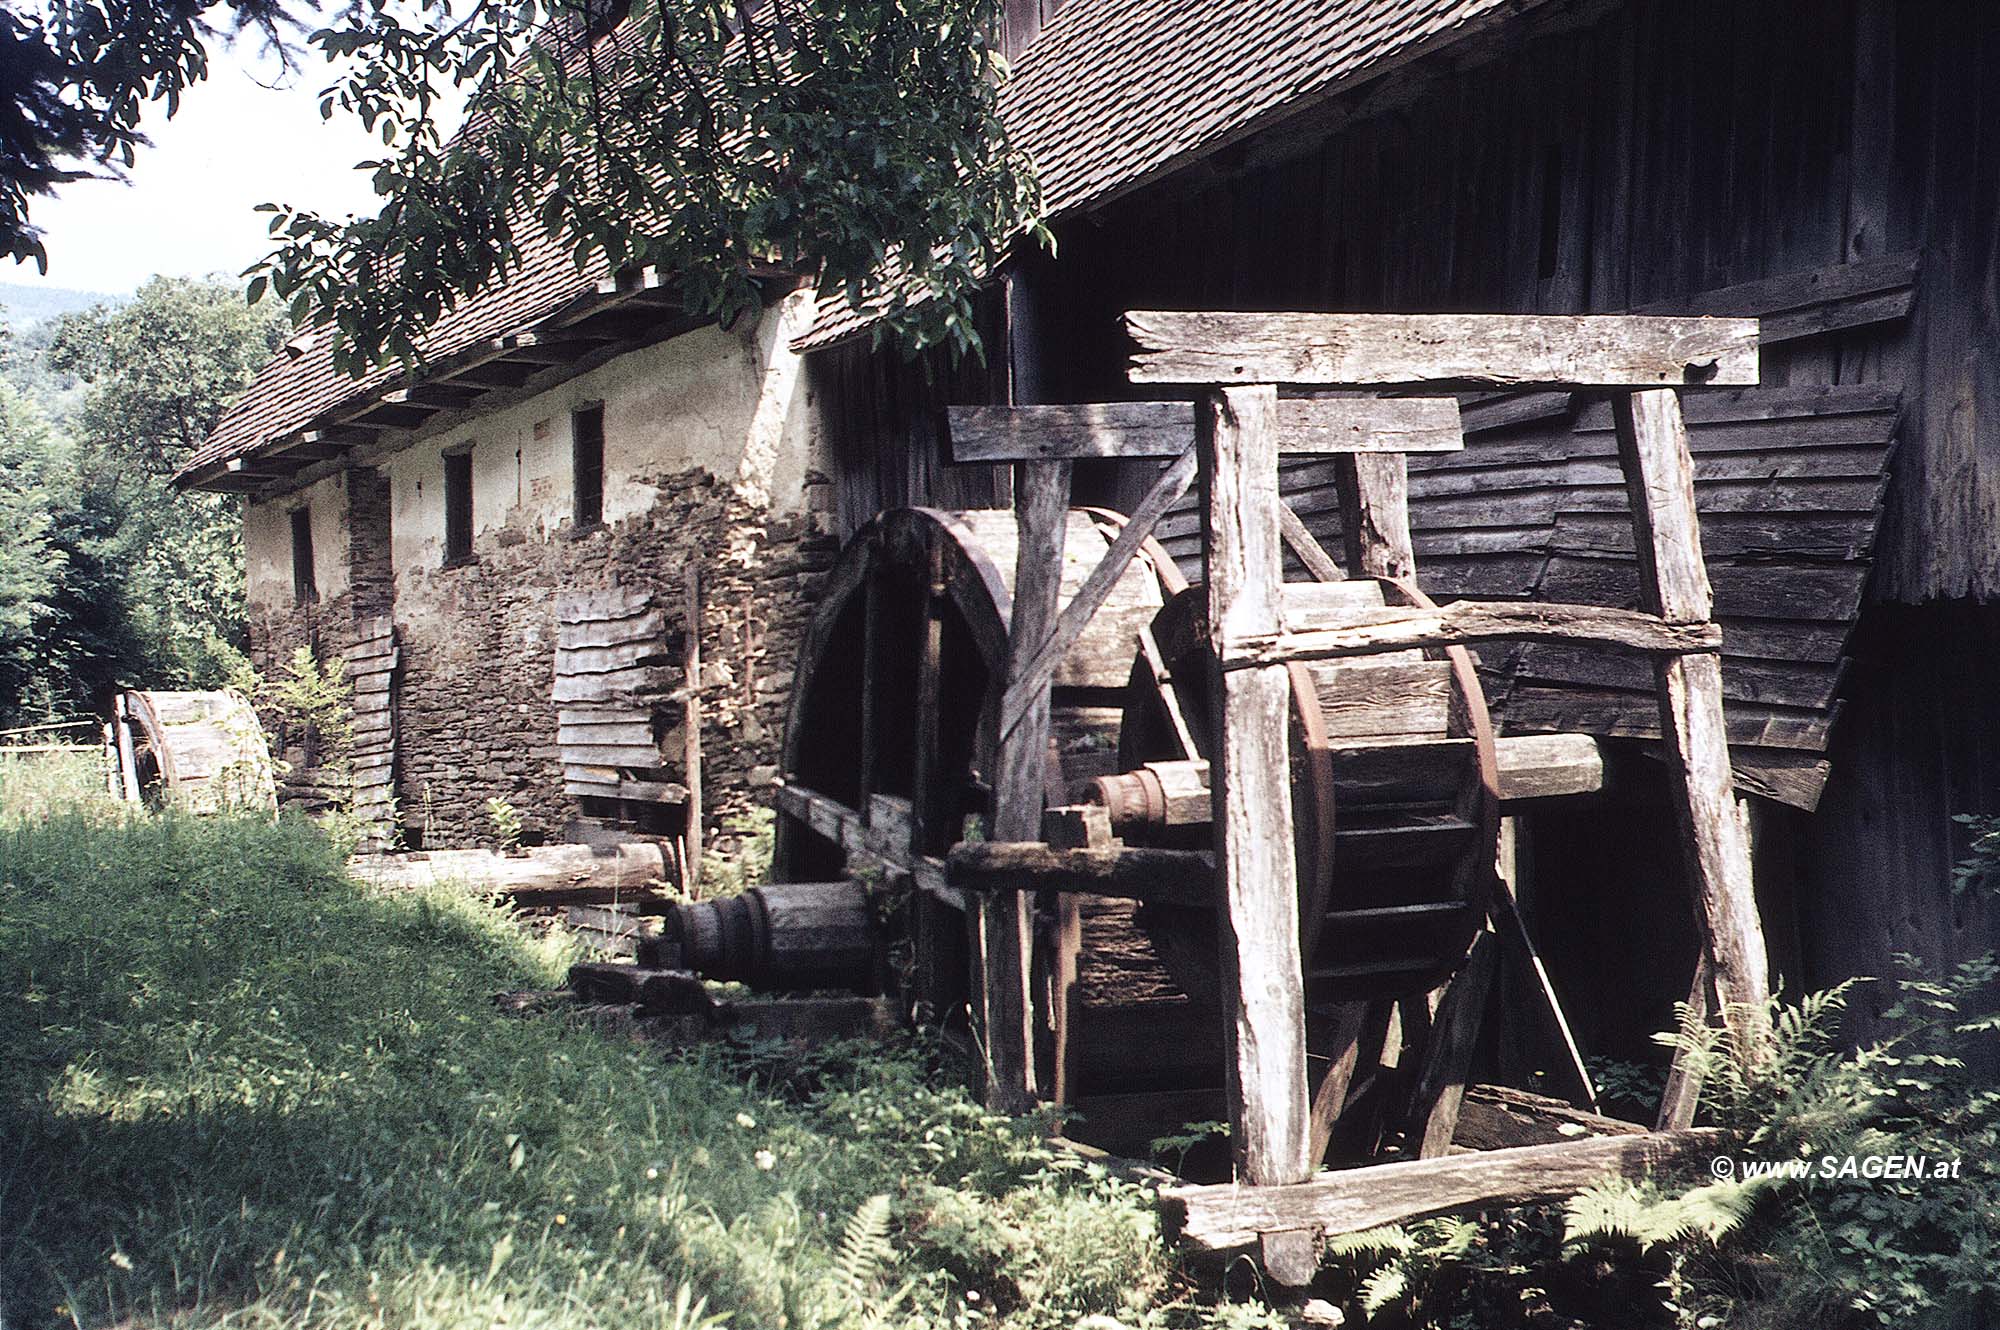 Mühle in Gams bei Hieflau - Landl